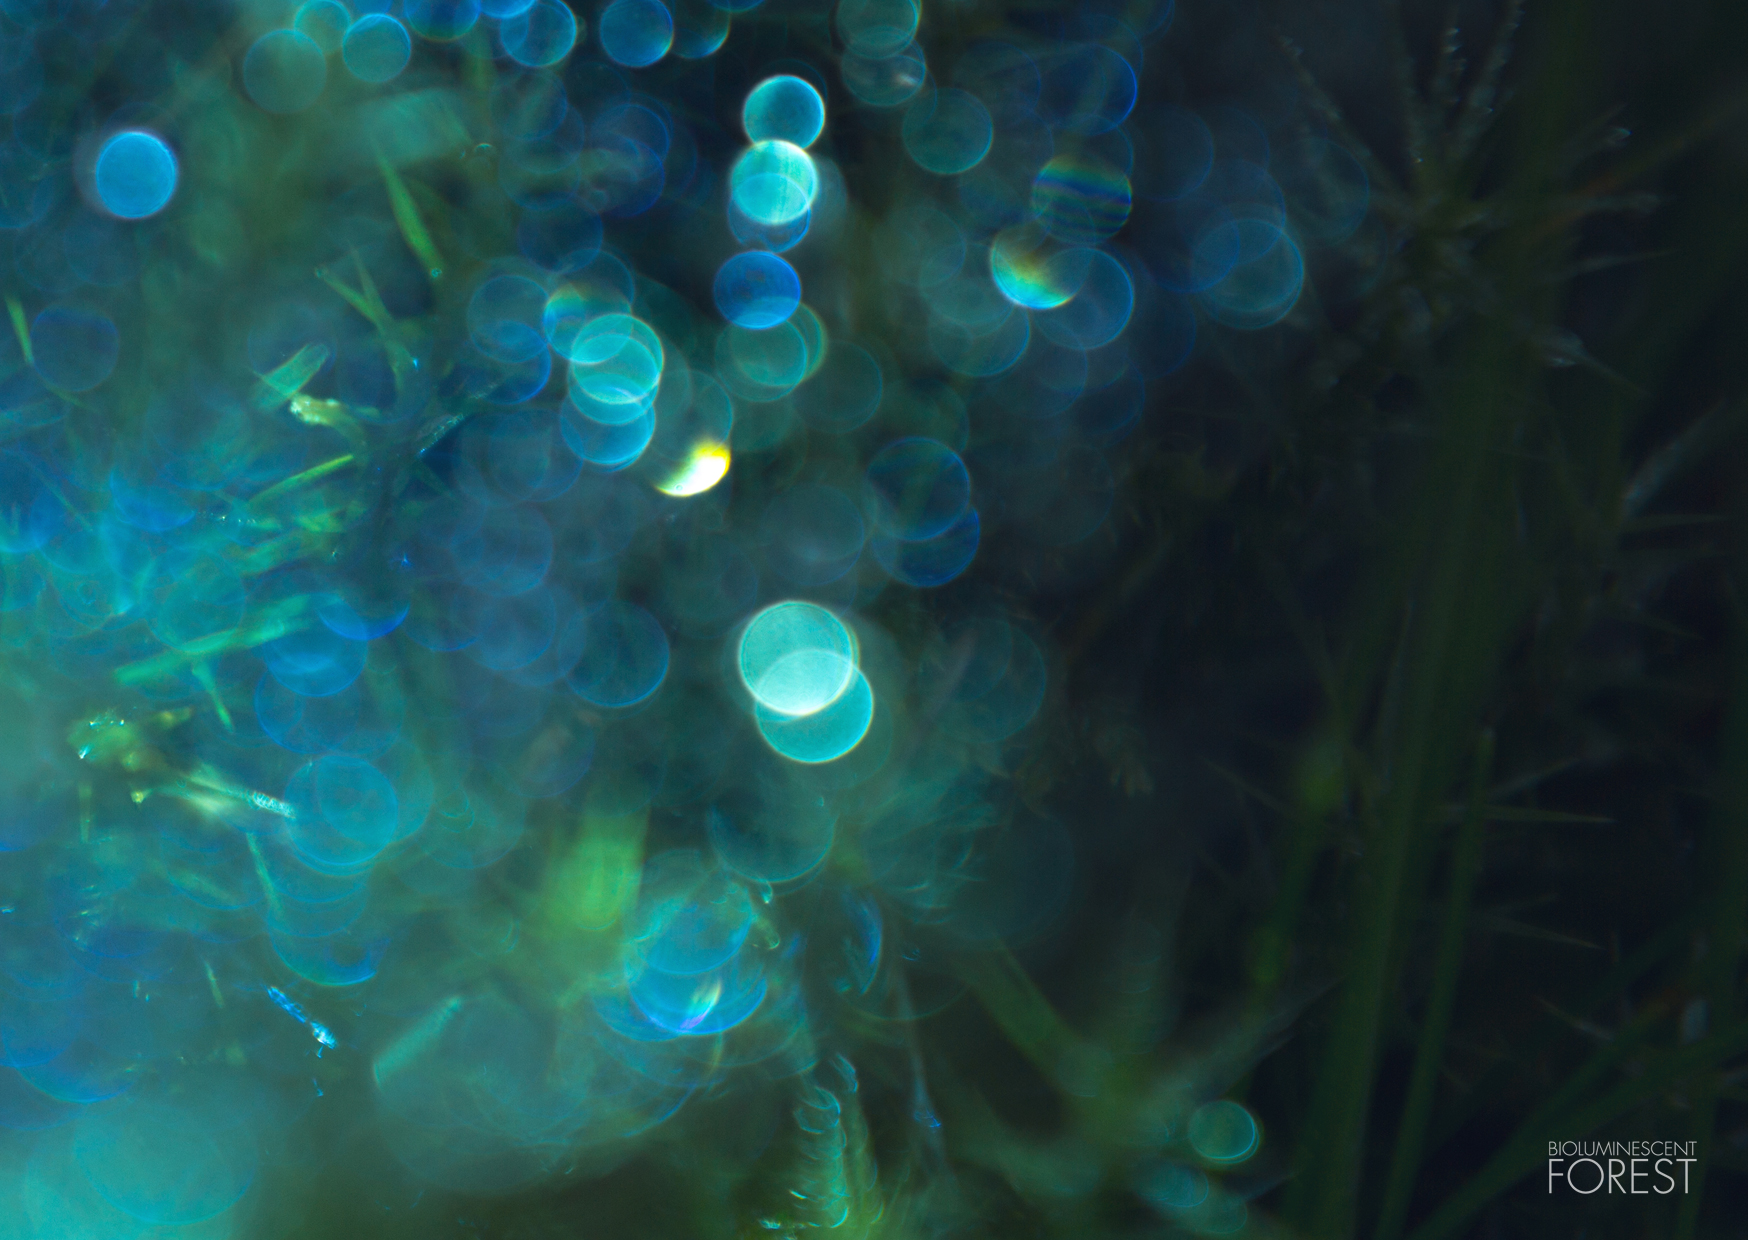 Bioluminescent forest – blurry_lights